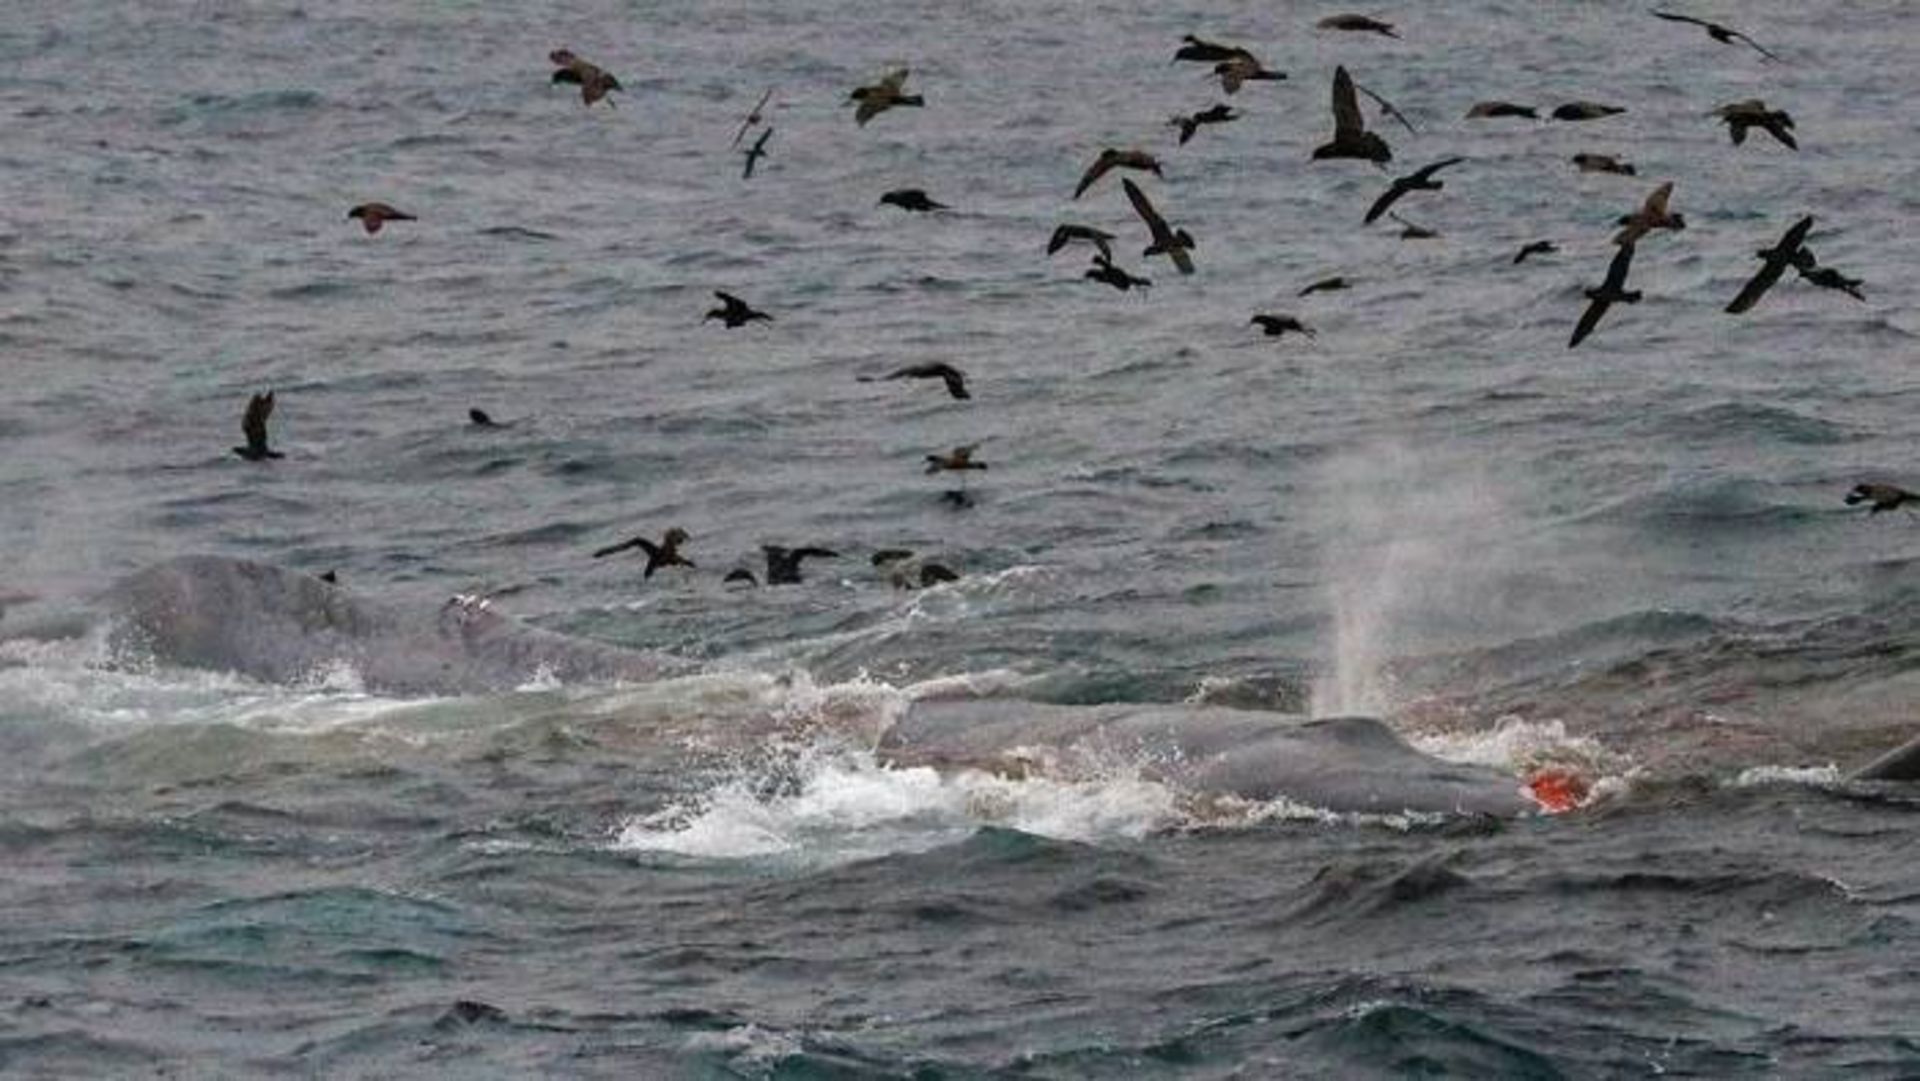 حمله ارکاها یا نهنگ های قاتل به نهنگ آبی در سواحل استرالیا / Orcas attack blue whale